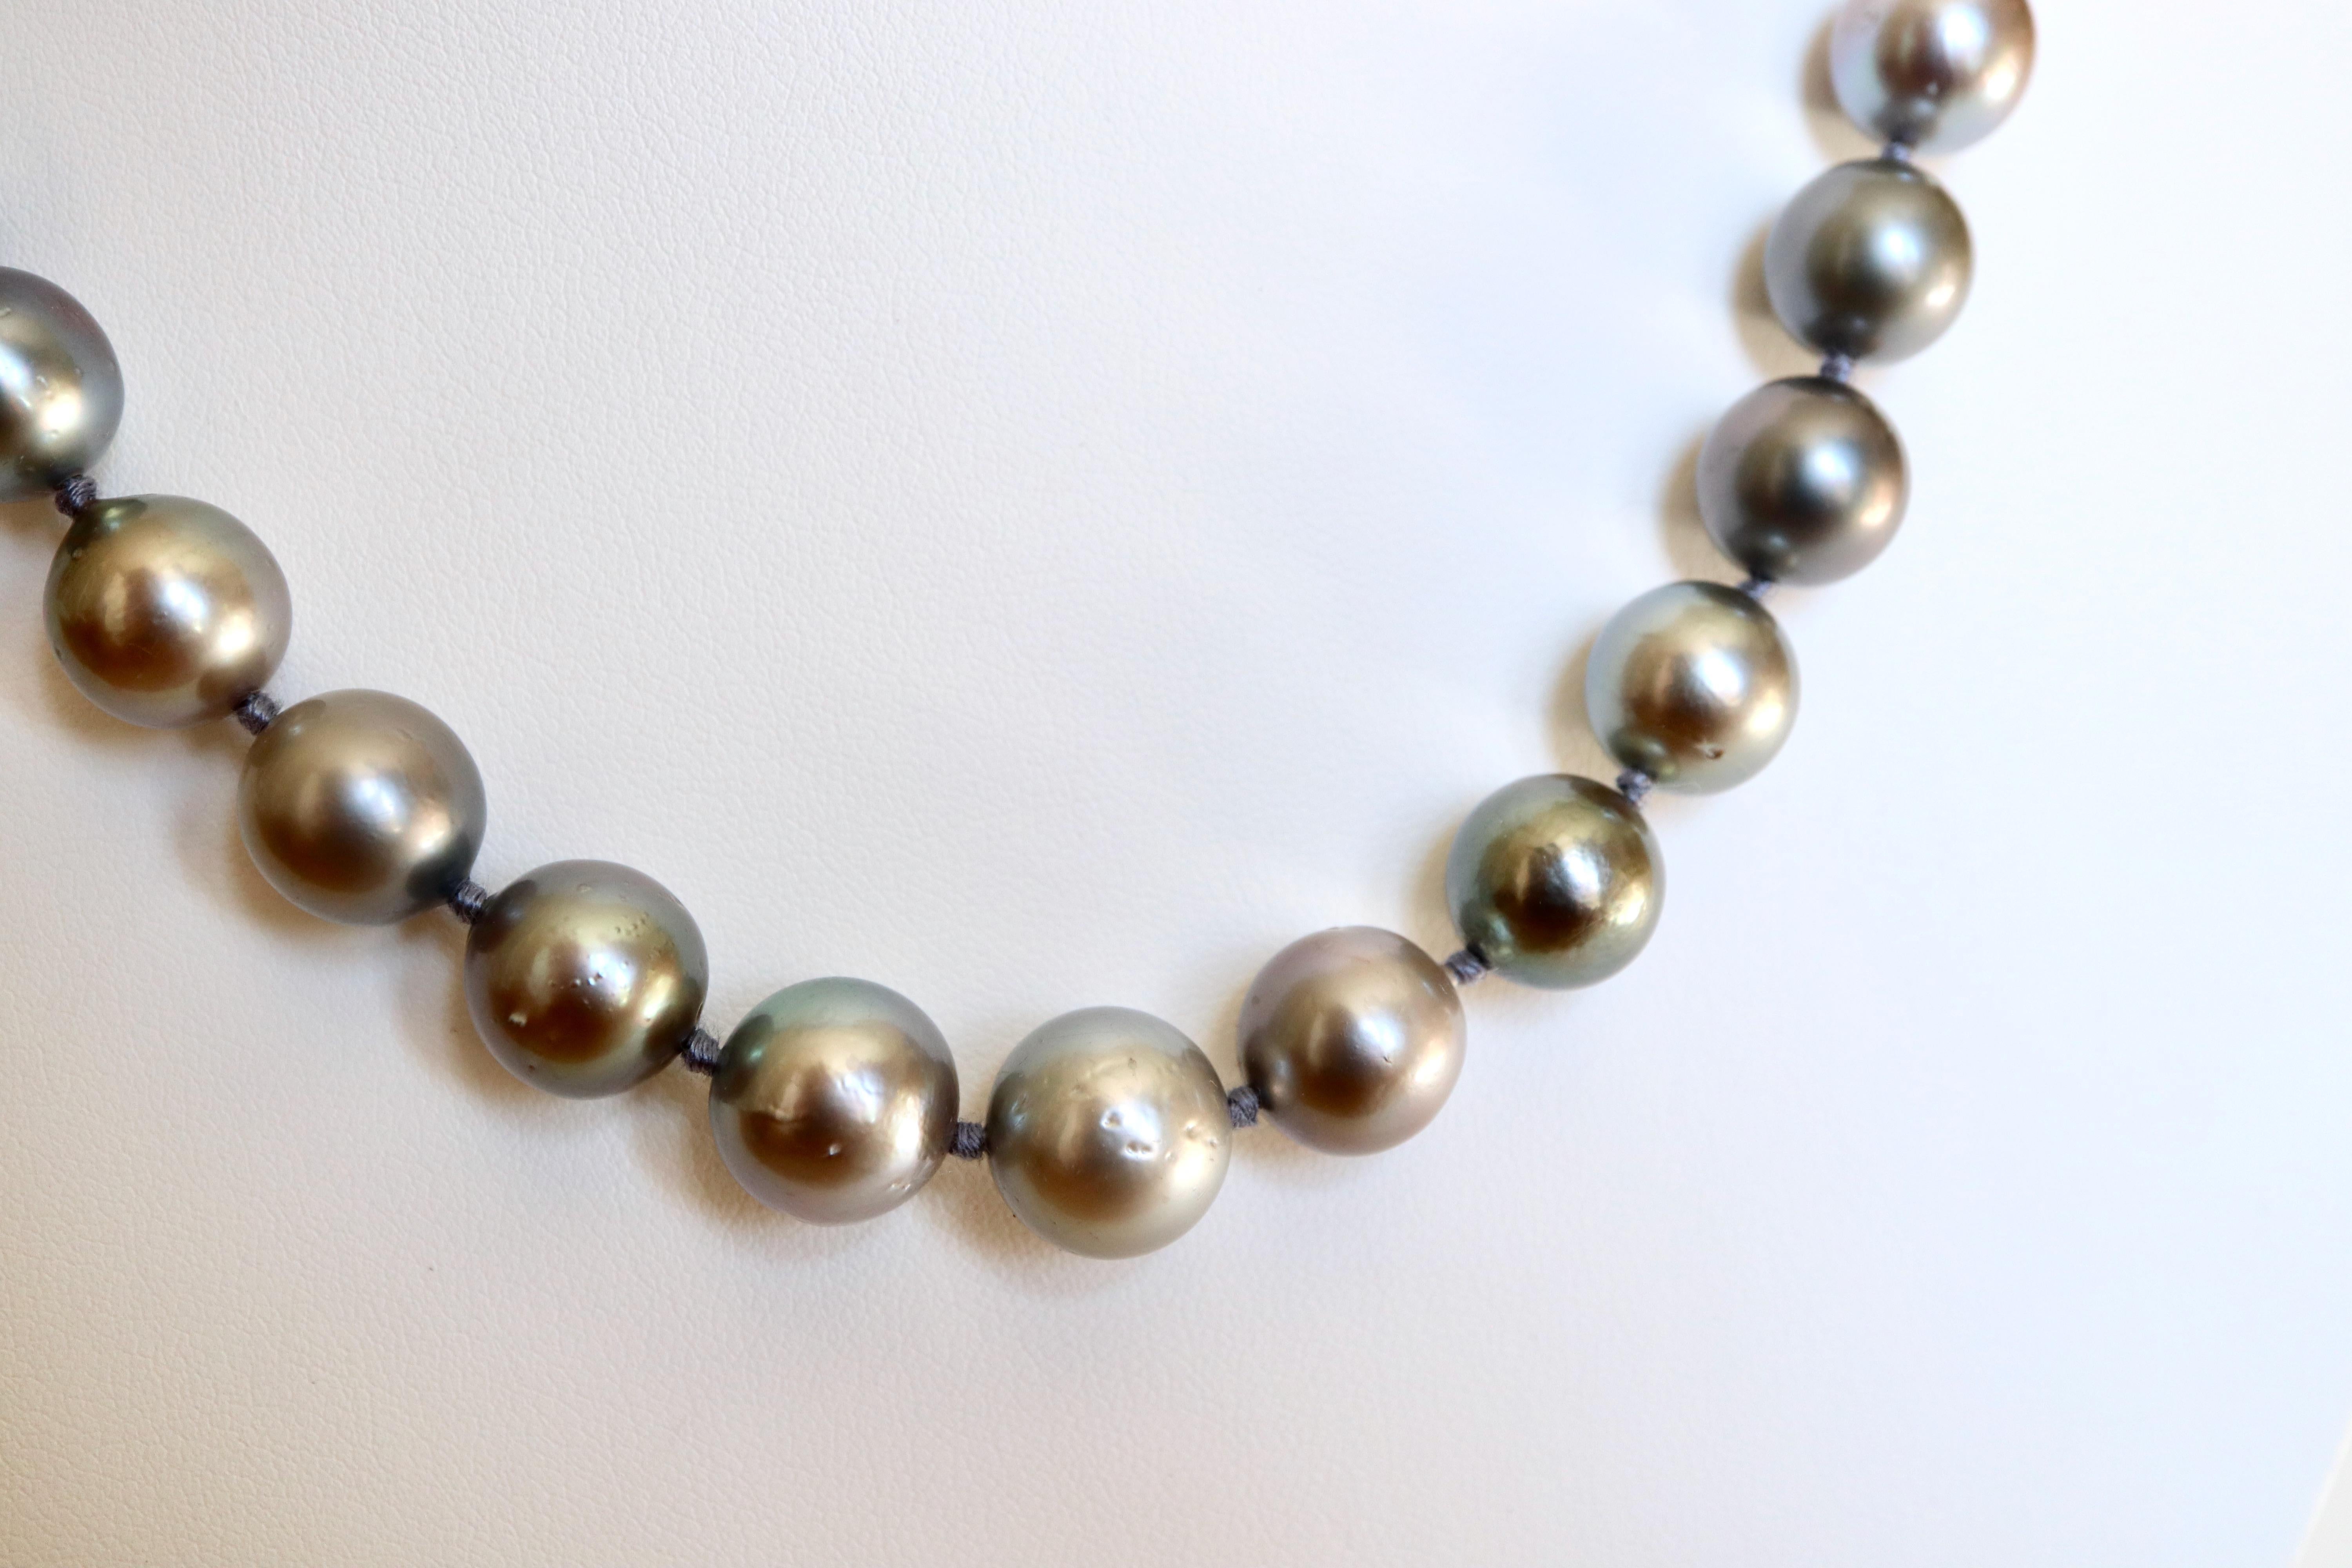 Collana di perle coltivate dei mari del sud, collana di perle burattate con chiusura invisibile in perle forate.
38 perle grigie: diametro delle perle: da 9 a 13 mm
Lunghezza: 48,5 cm
Peso lordo: 73,2 g